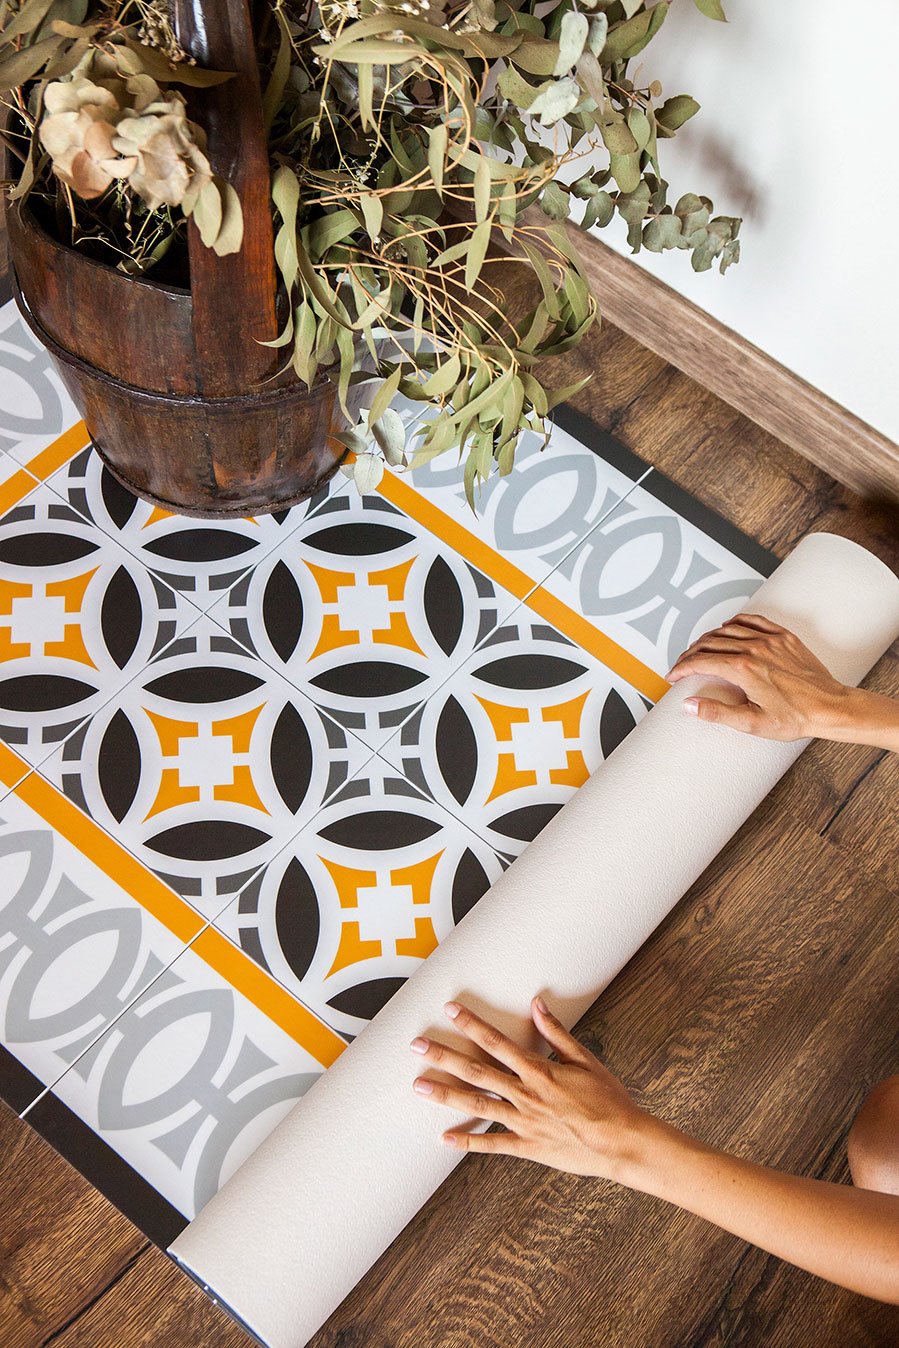 Las alfombras de Hidraulik cambian tu suelo en un abrir y cerrar de ojos, añadiendo el "toque".